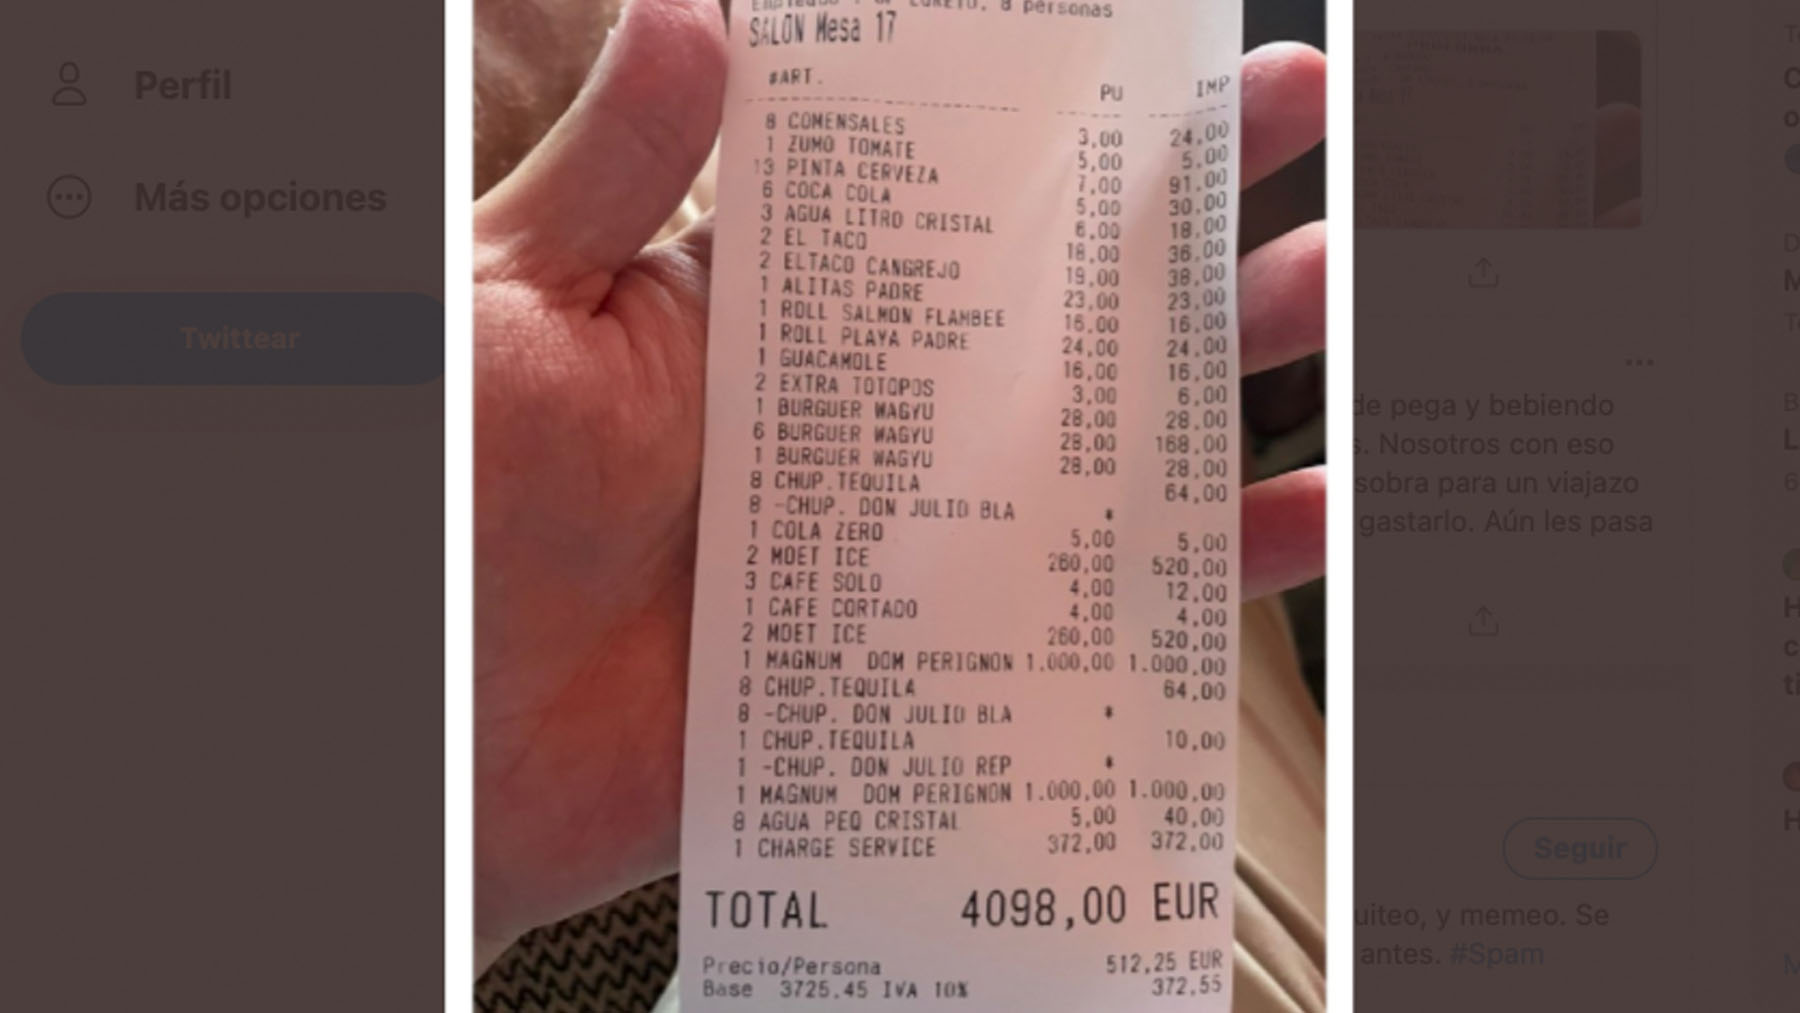 Detalle de la factura del restaurante de Marbella.